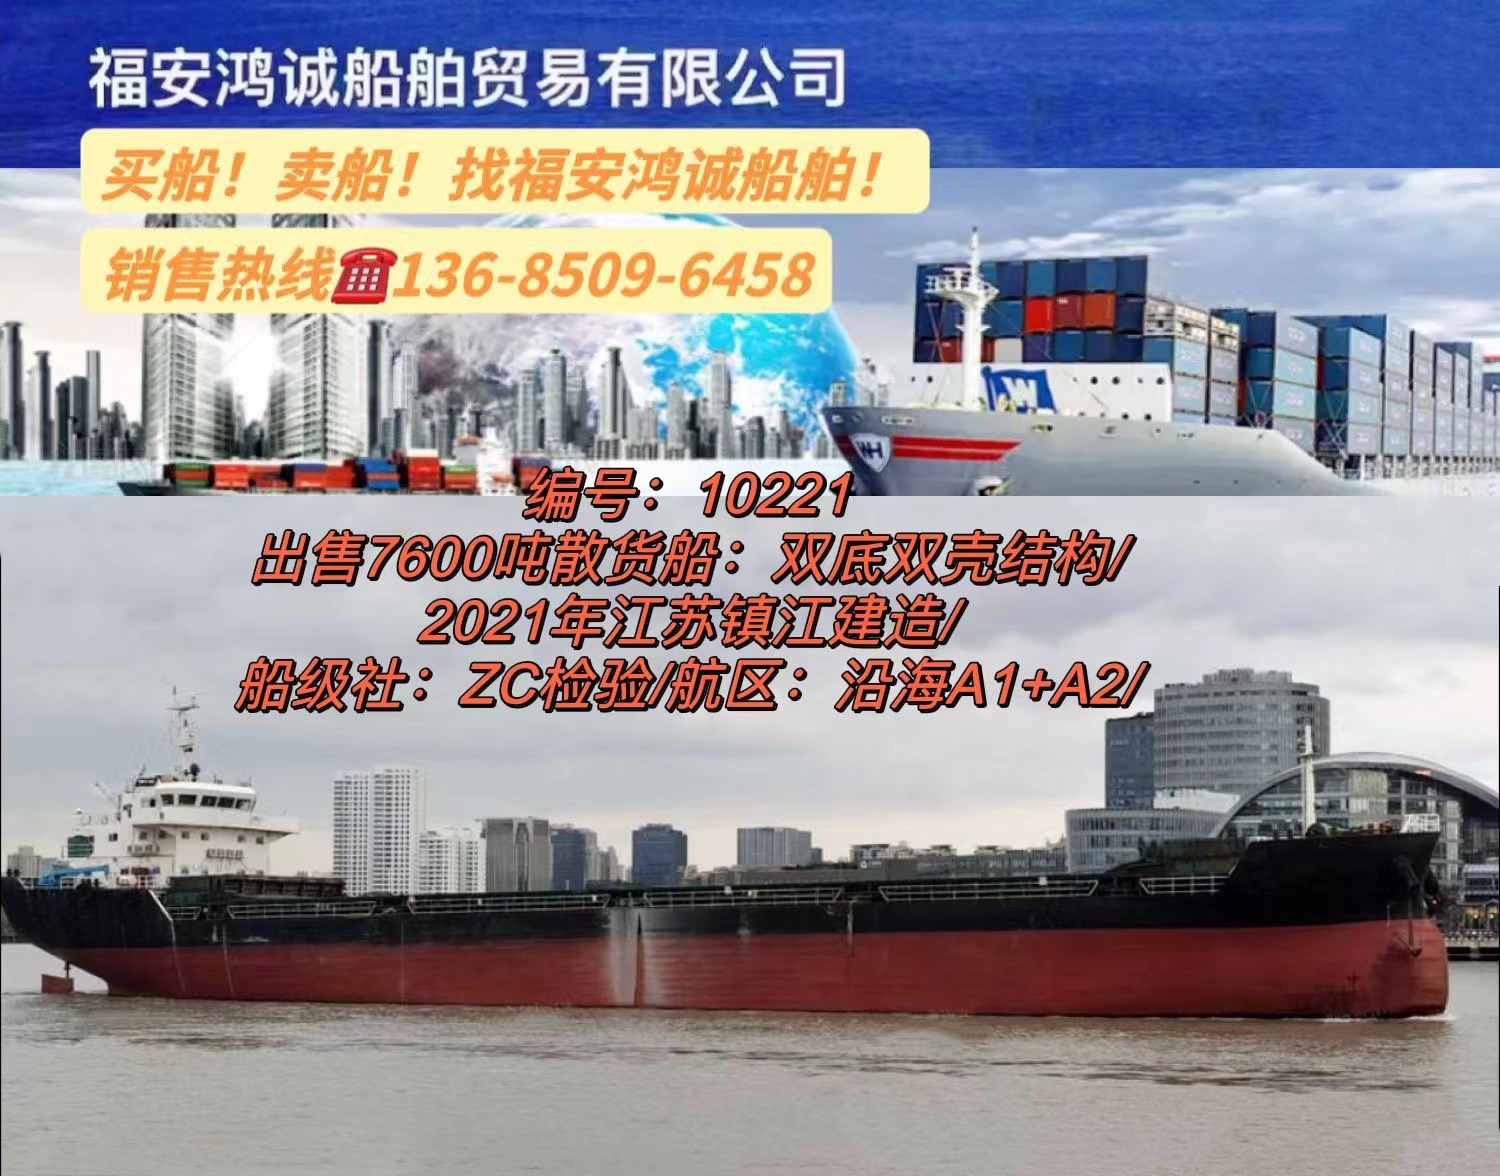 出售7600吨散货船： 双底双壳结构/ 2021年江苏镇江建造/